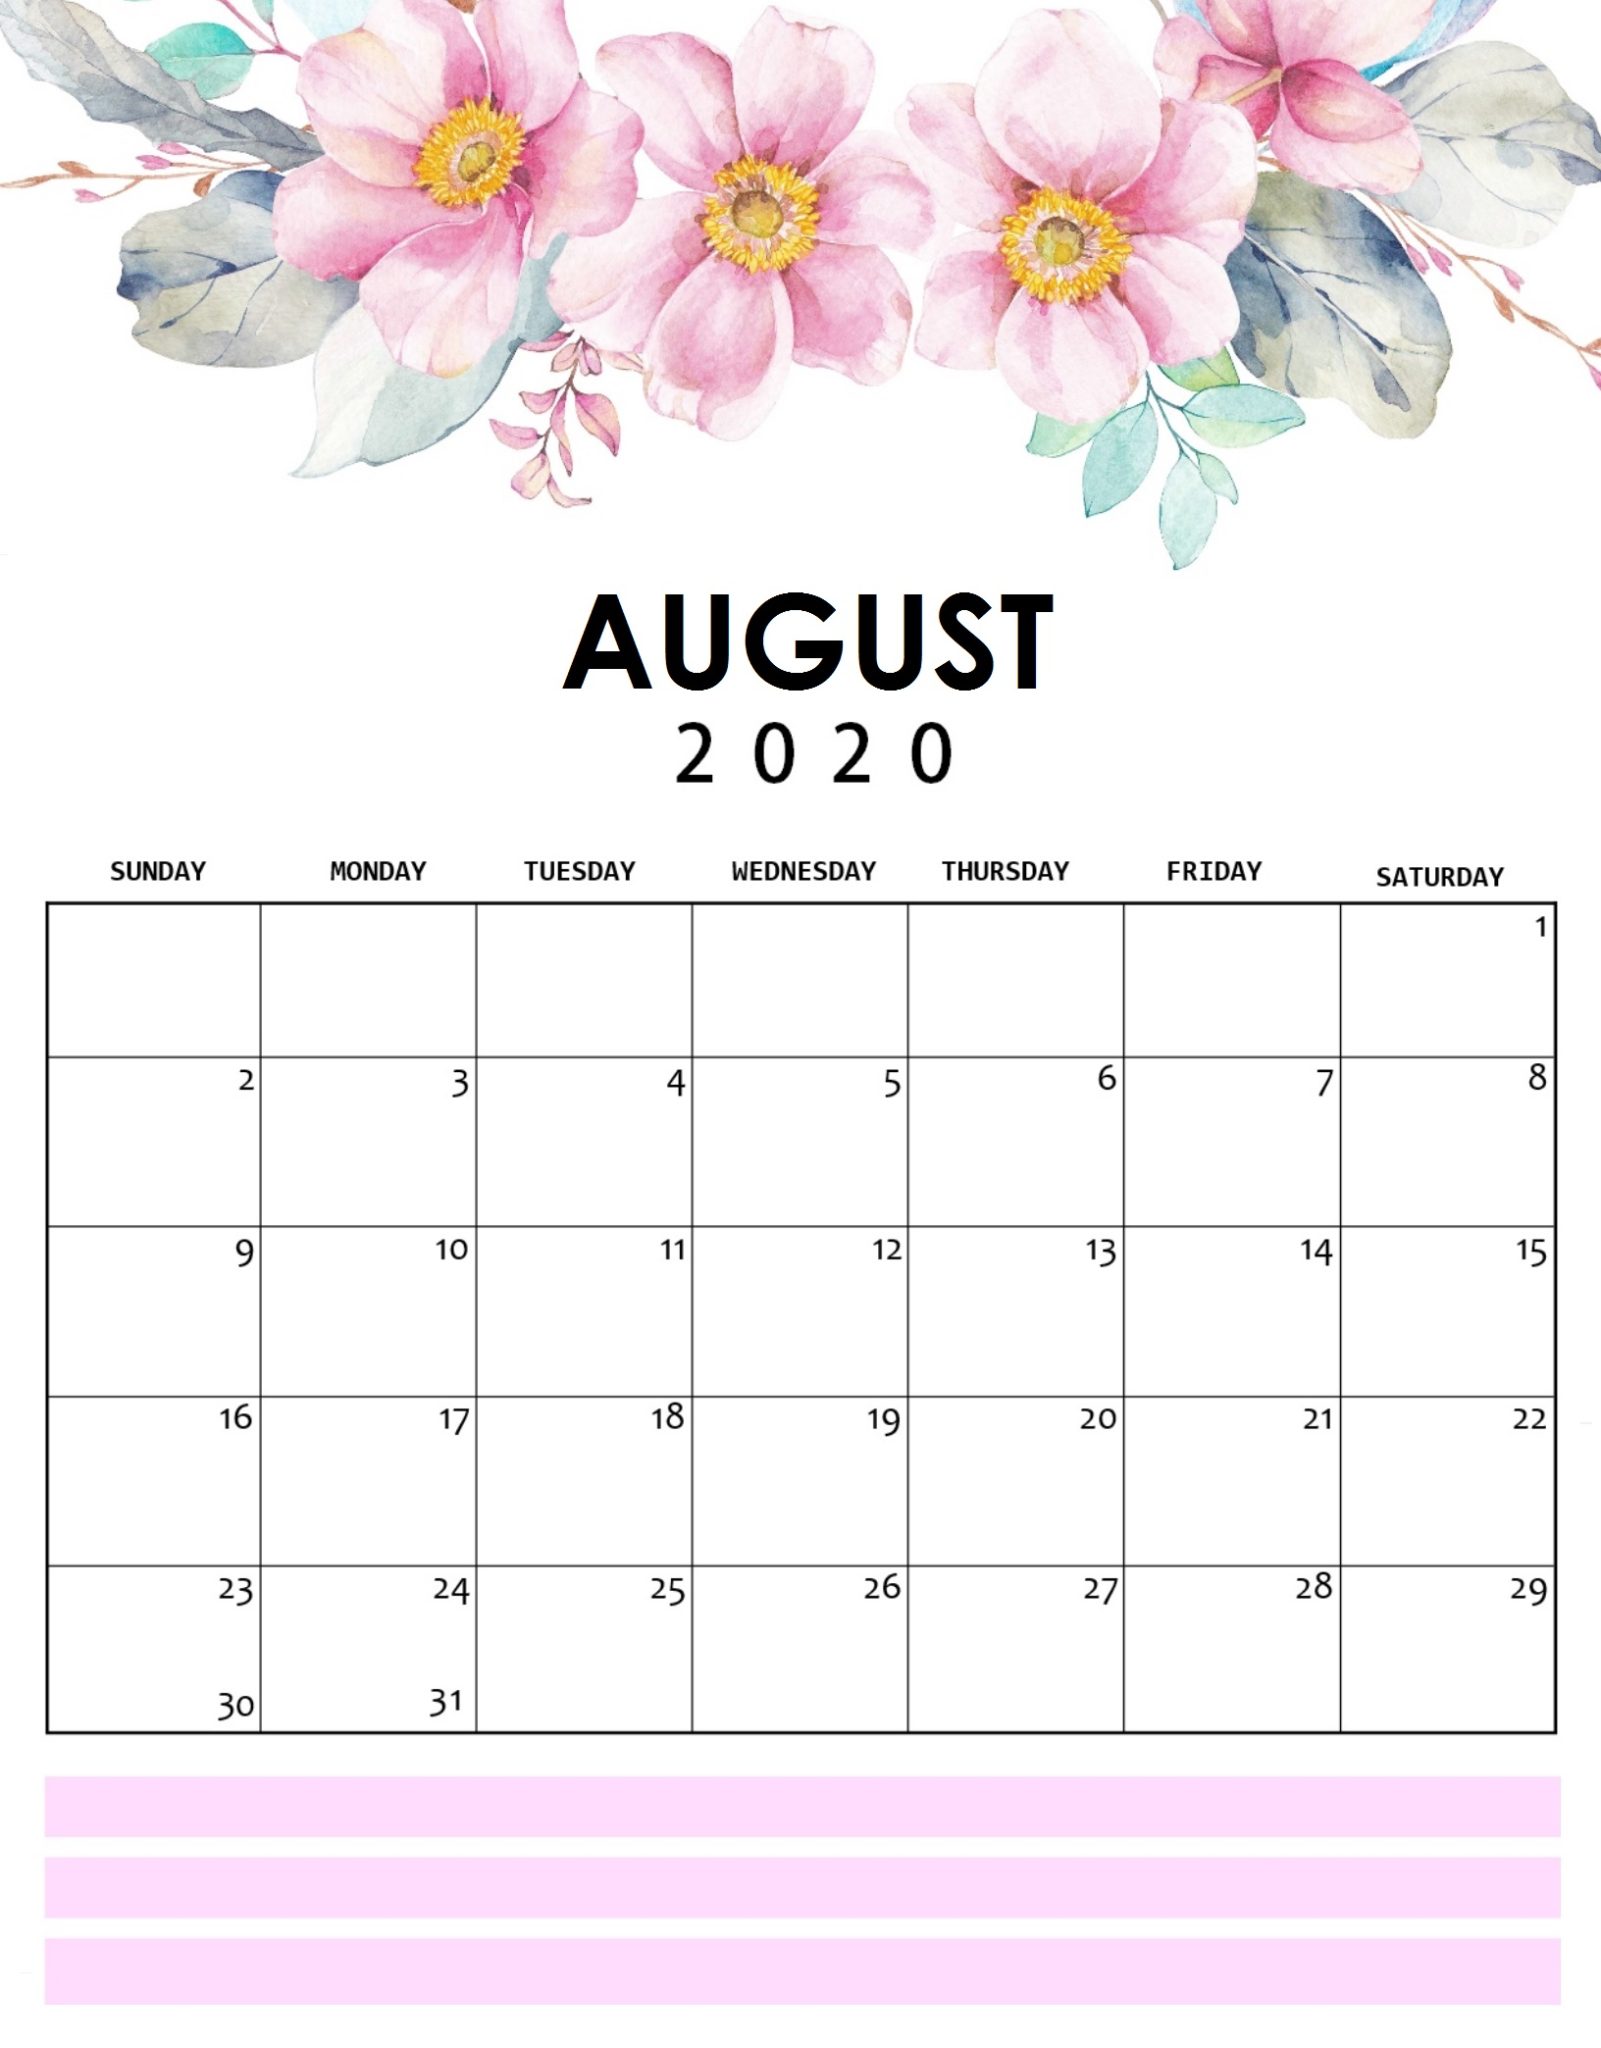 August 2020 Flower Calendar